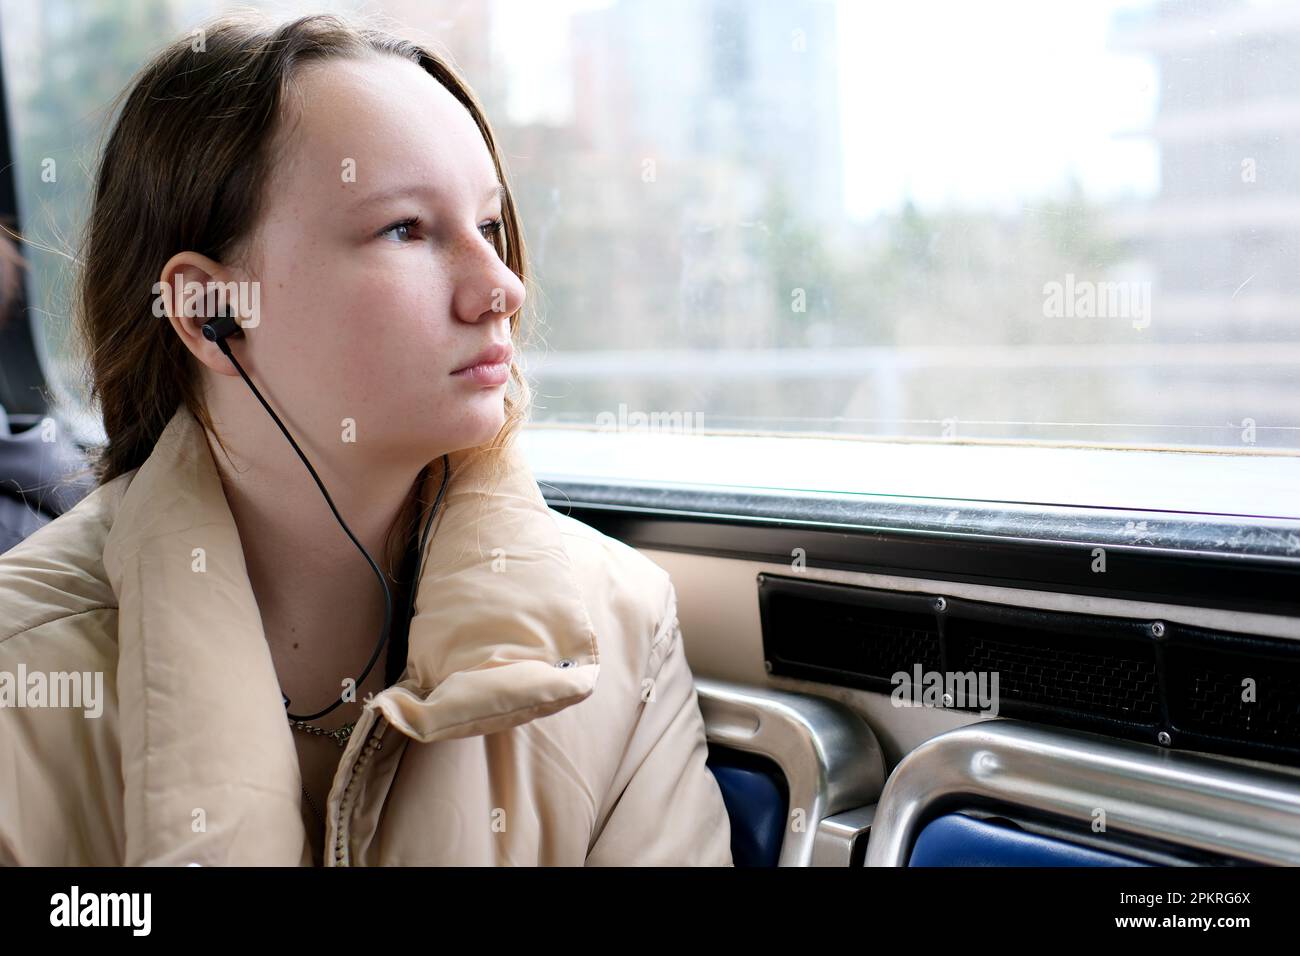 Junge Teenager, die im Transport mitfährt, schaut aus dem Fenster Kopfhörer Mobiltelefon friedliche Gesichtsfläche für Text Sky Train Bus Auto gewöhnliche Person in echten Straßen Städte kanada Vorort surrey Stockfoto